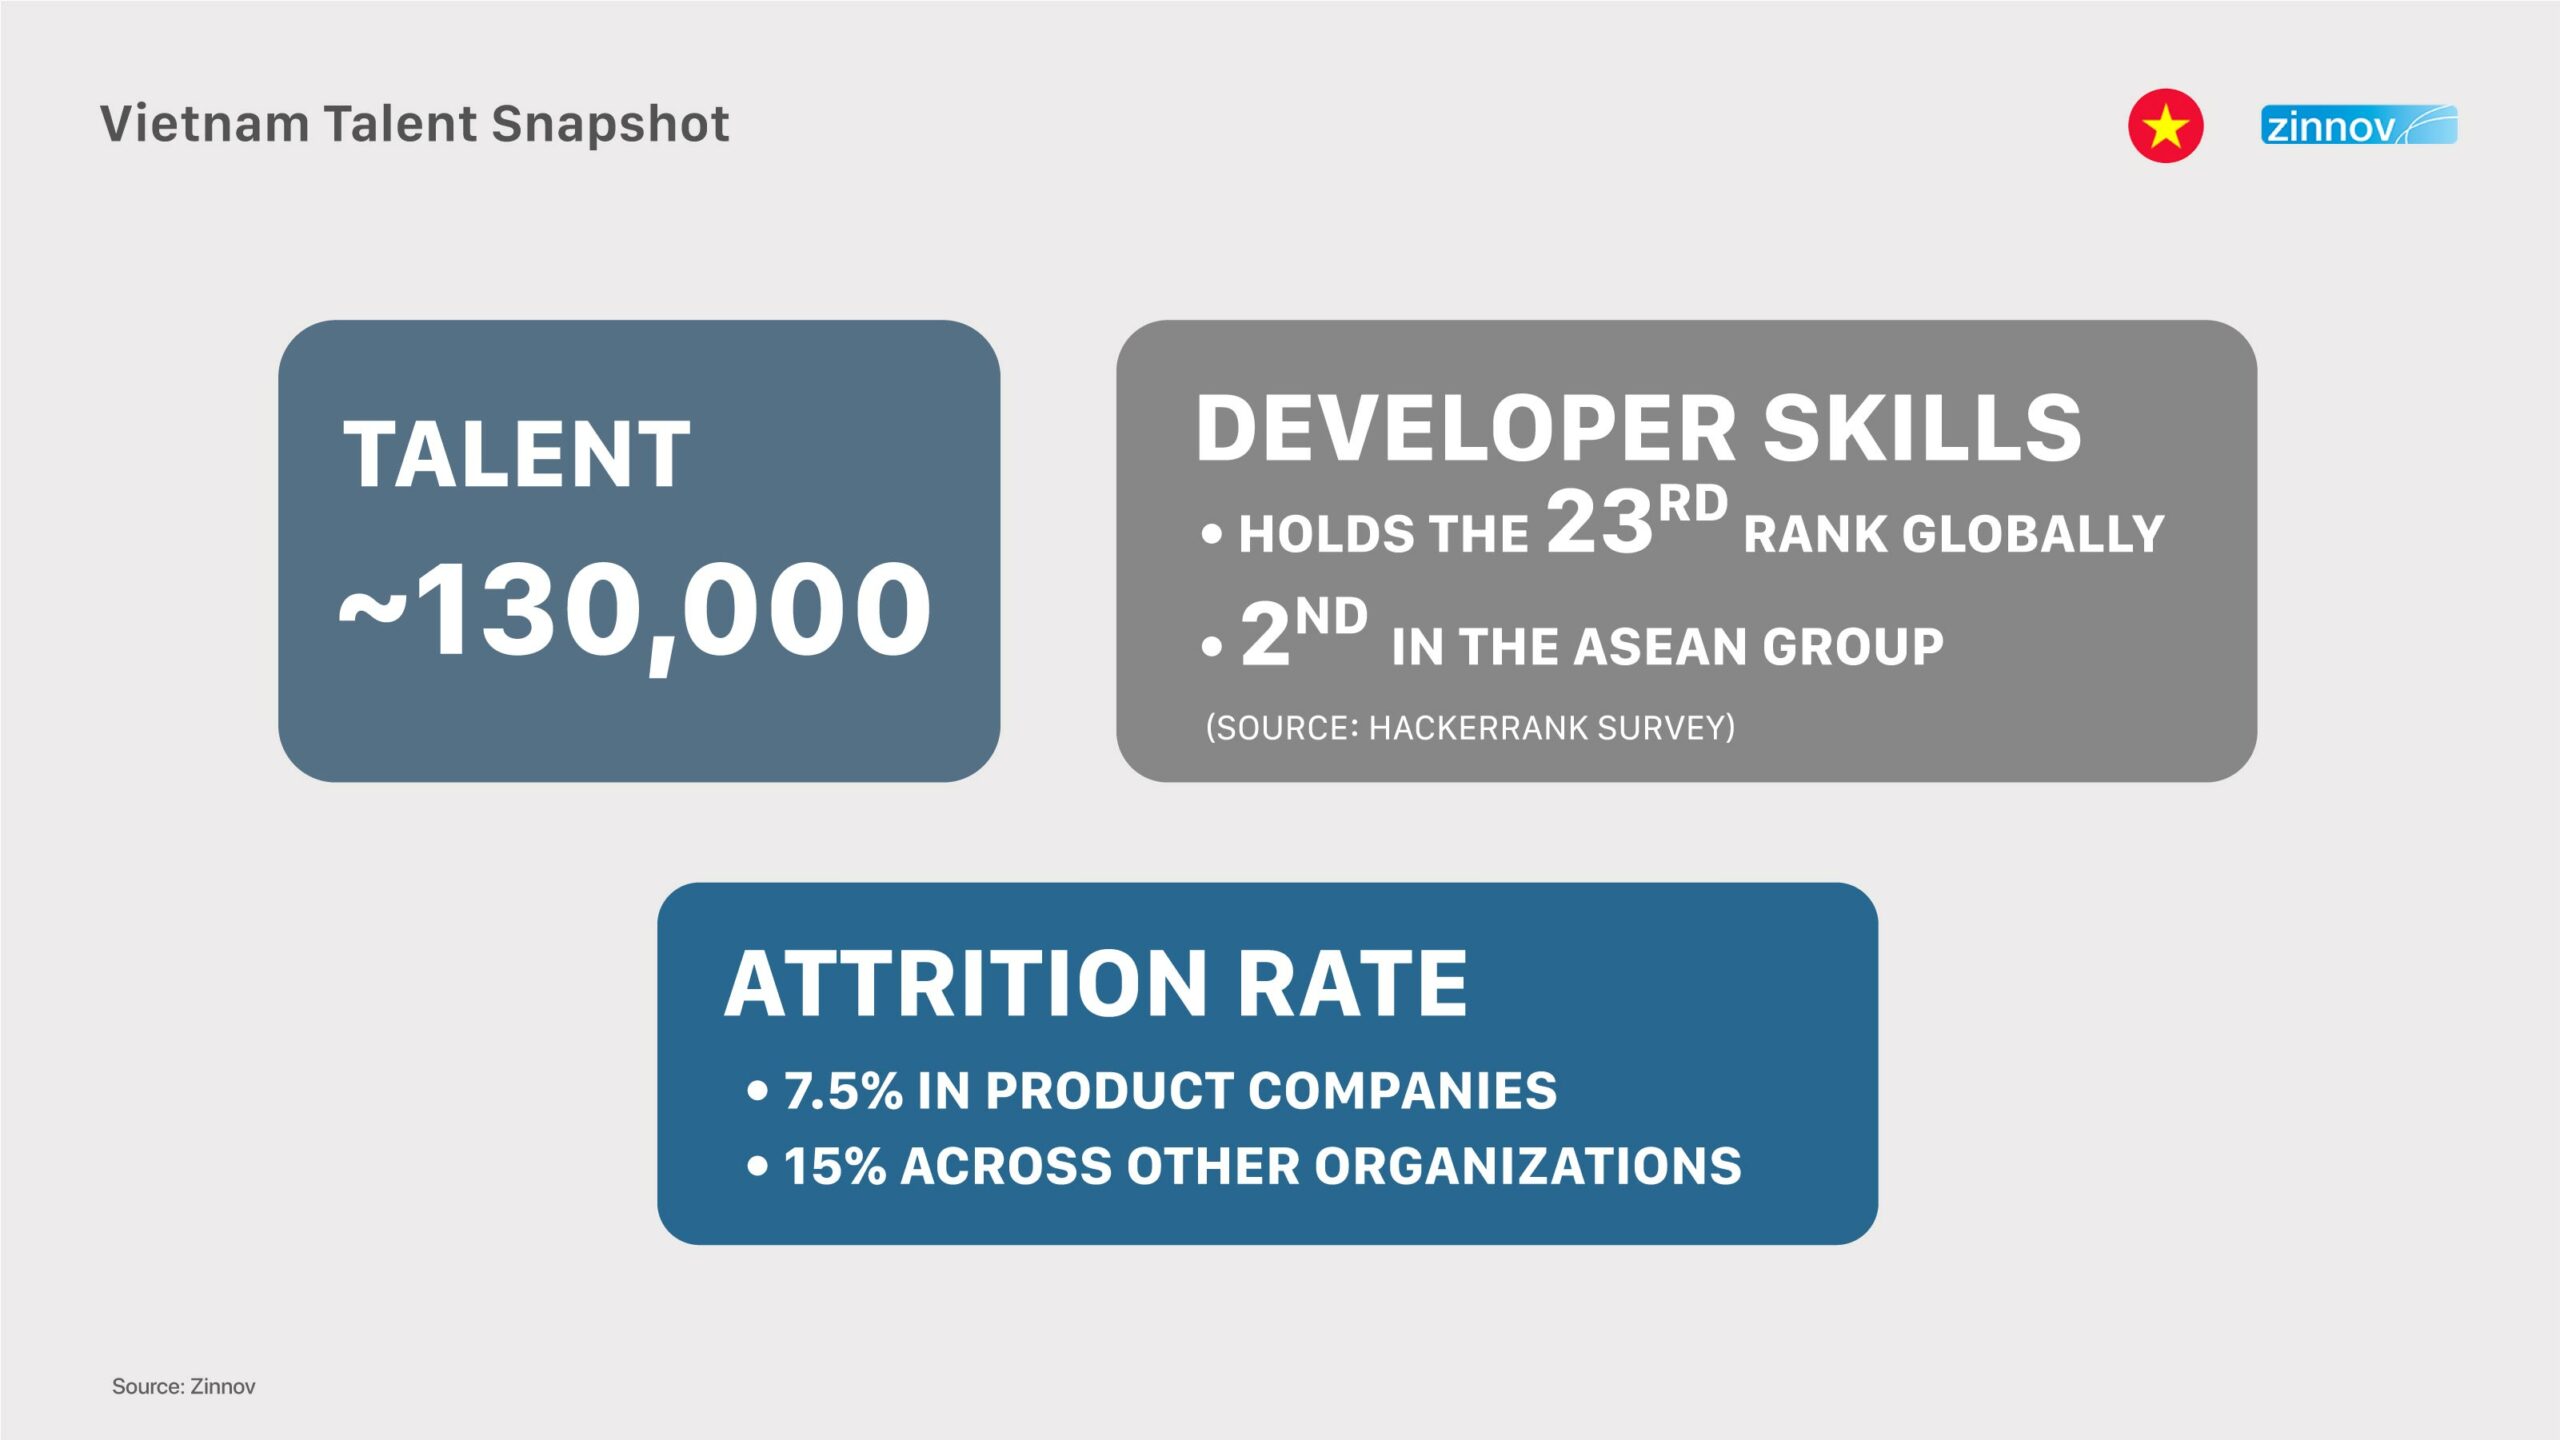 Vietnam talent snapshot